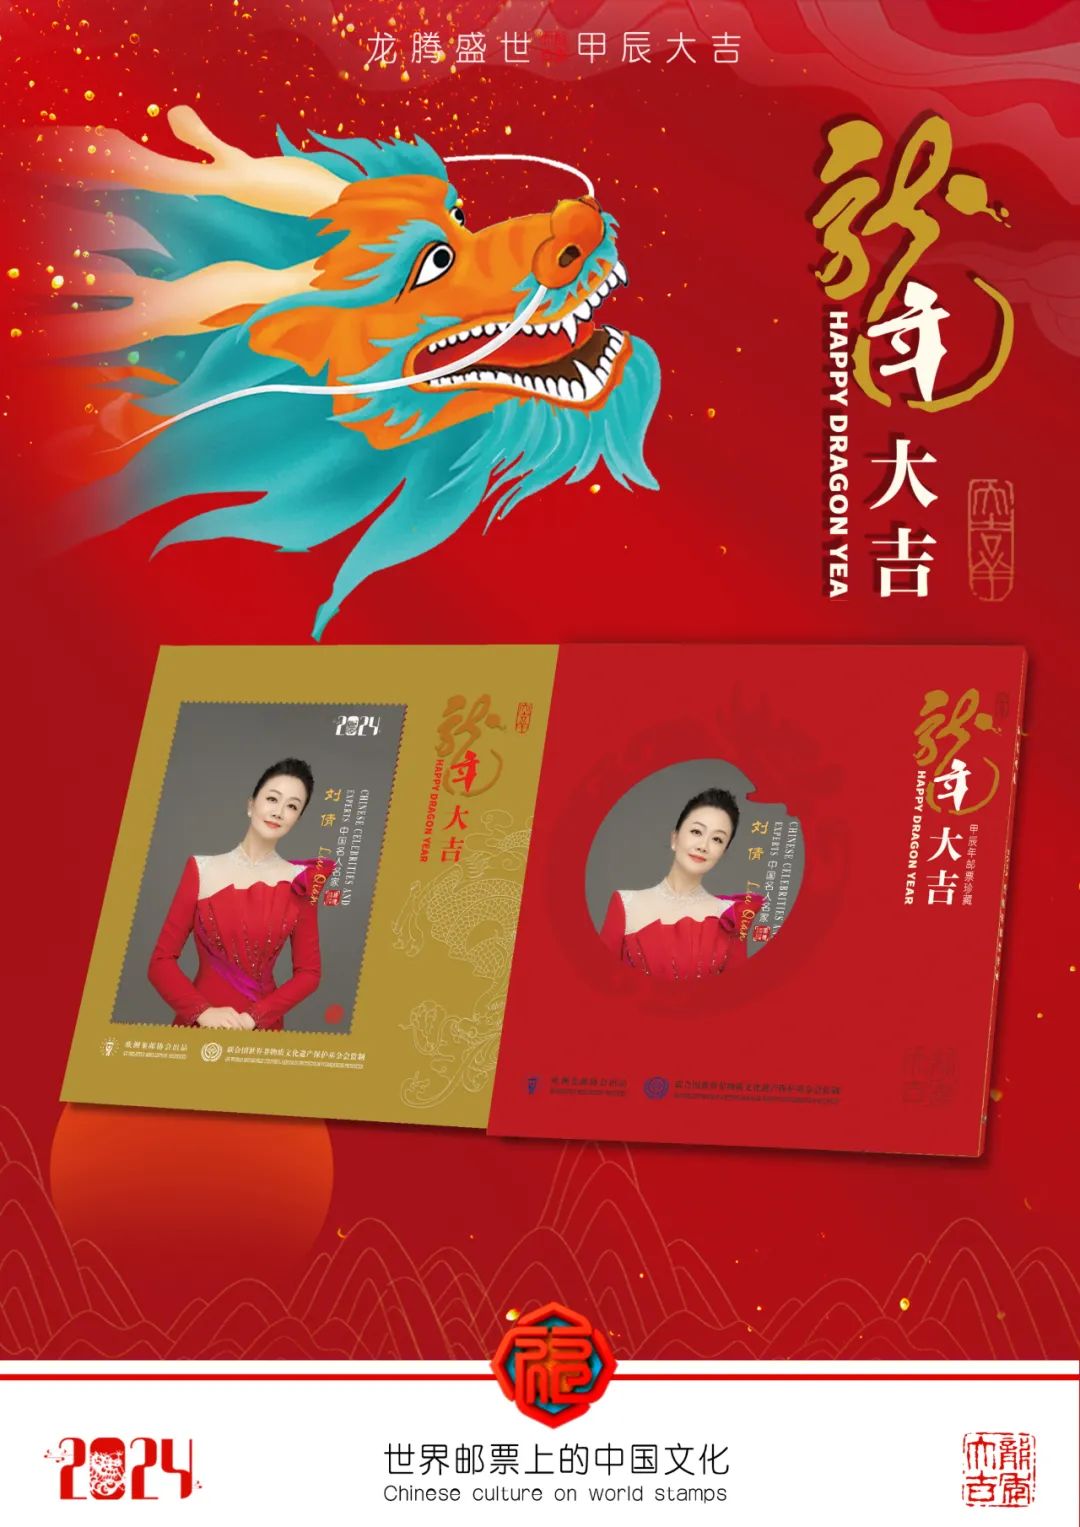 龙腾盛世青年女高音歌唱家刘倩新年主题邮品&法国荷兰生肖龙邮票联袂全球首发